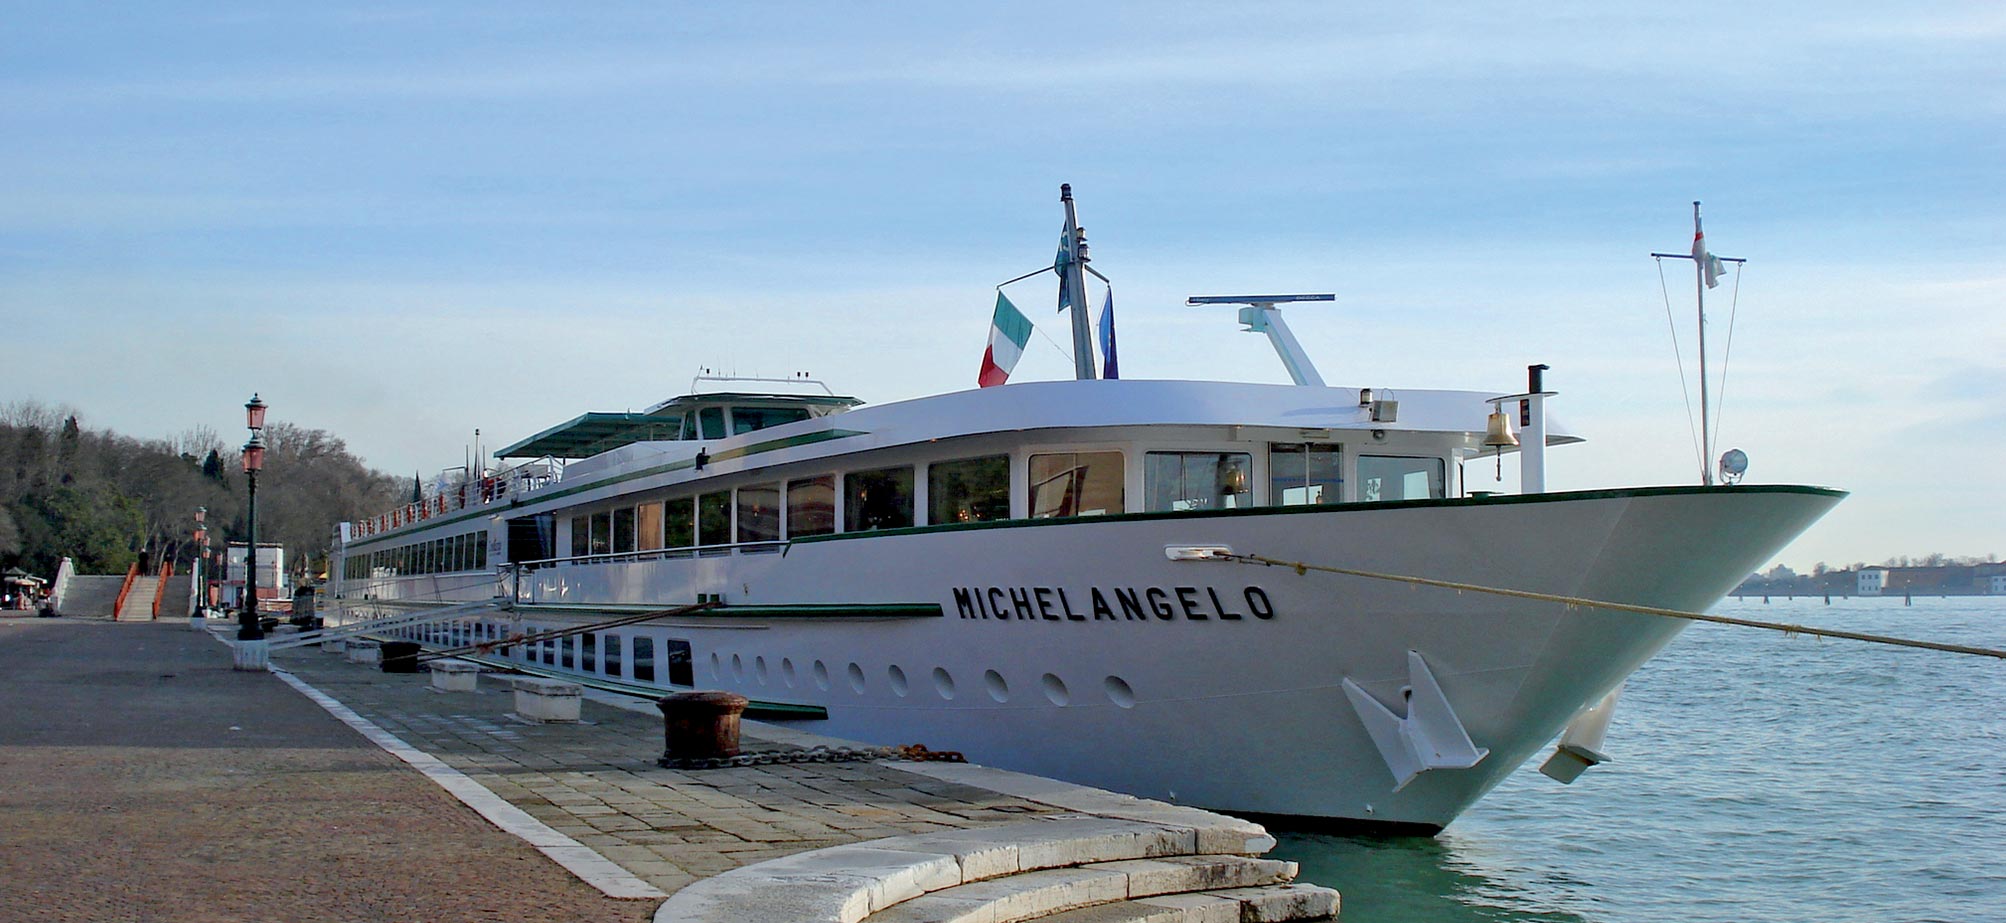 michelangelo cruise ship venice